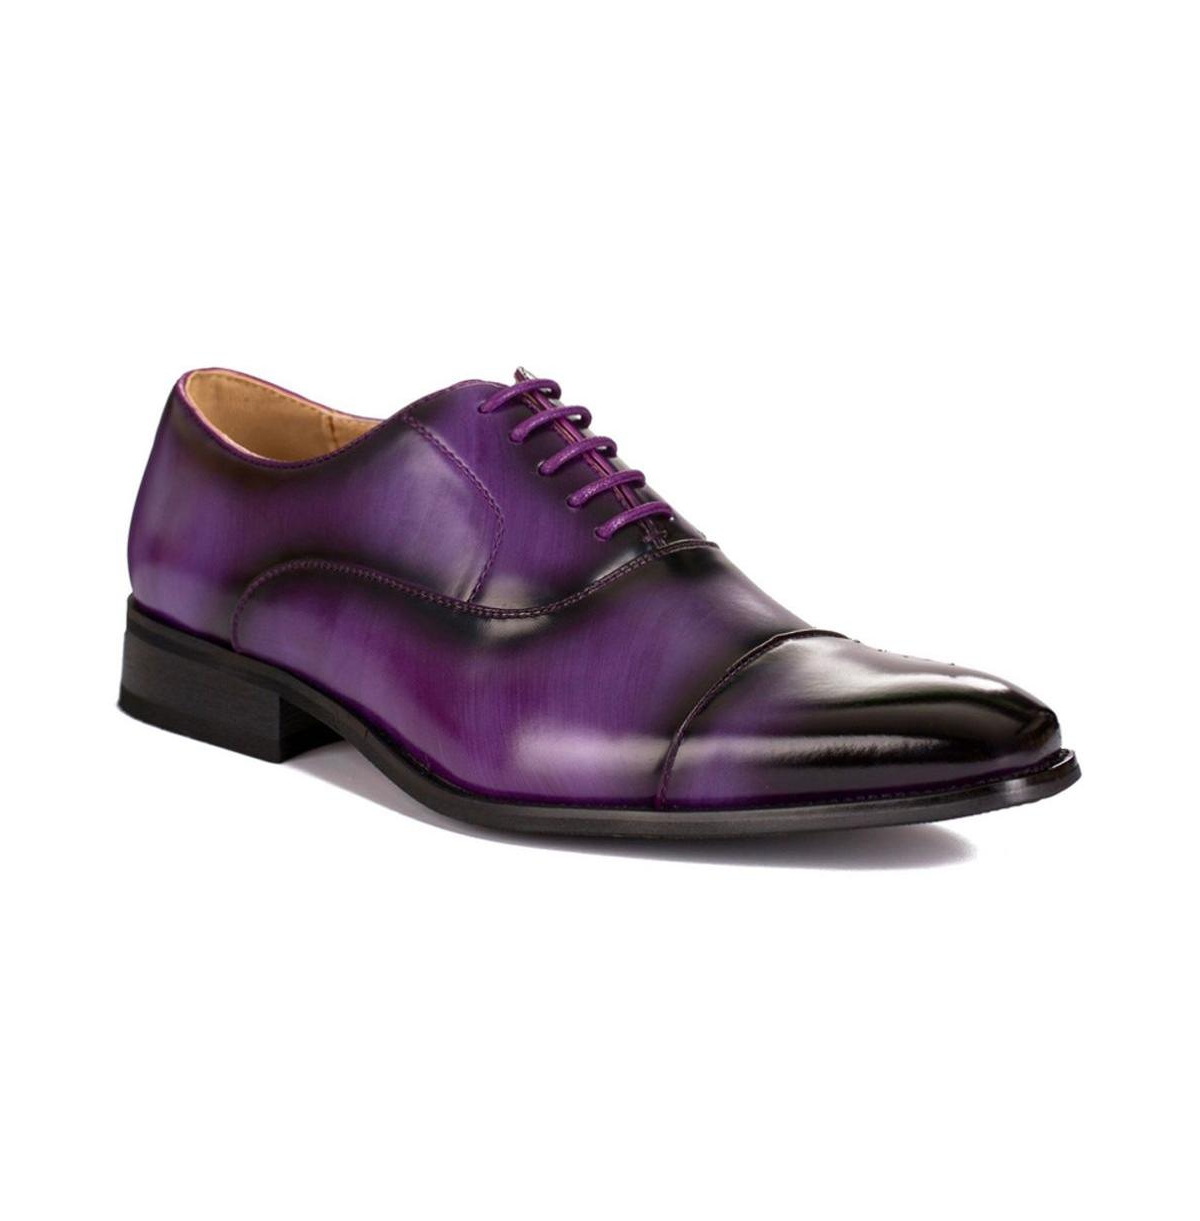 Lace-up Cap Toe Dress Oxfords Shoes - Purple